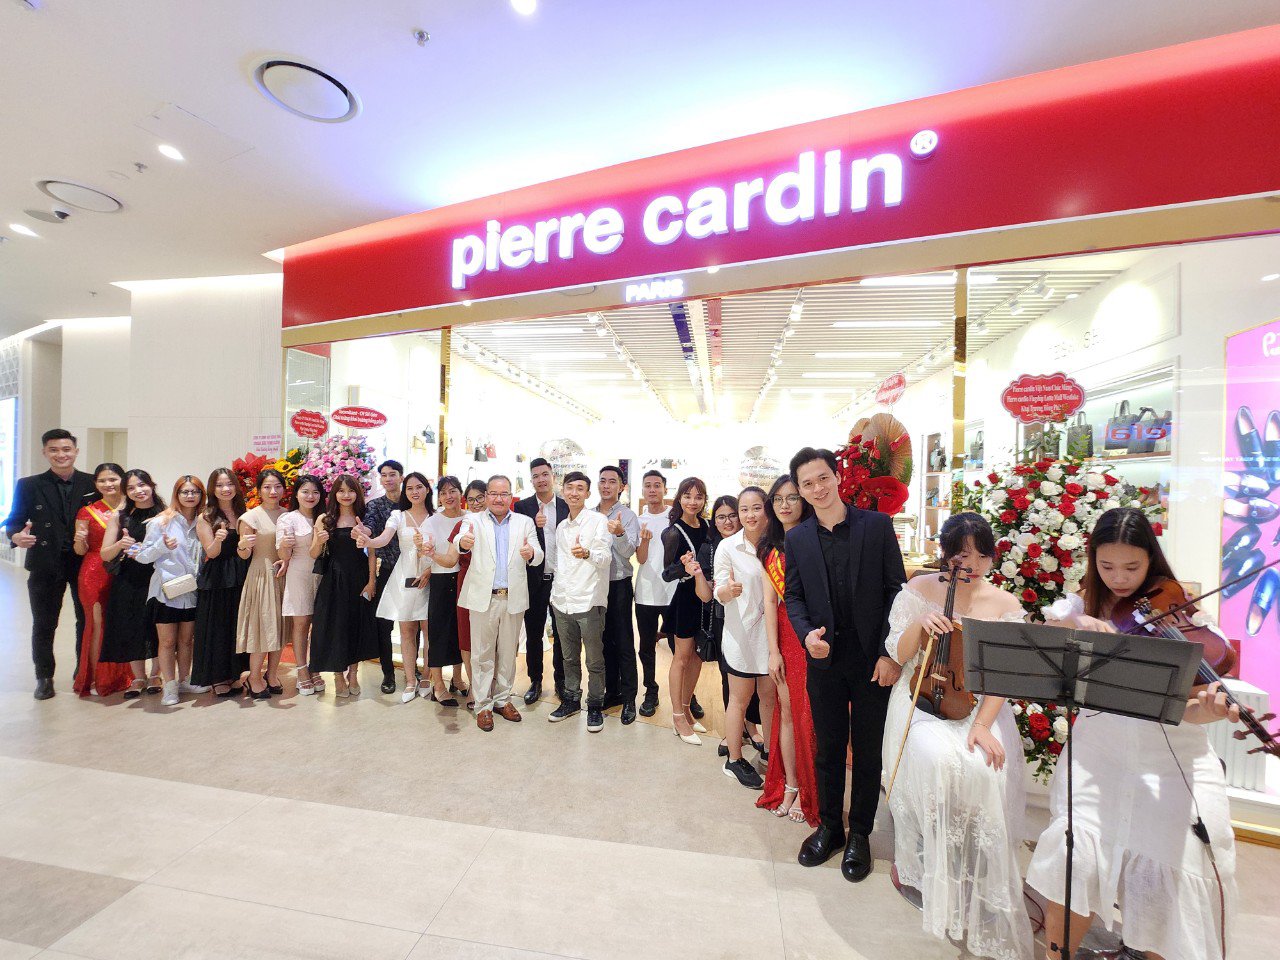 Pierre Cardin Shoes & Oscar Fashion khai trương hàng loạt cửa hàng dịp đại lễ 30/4 -1/5 - 3